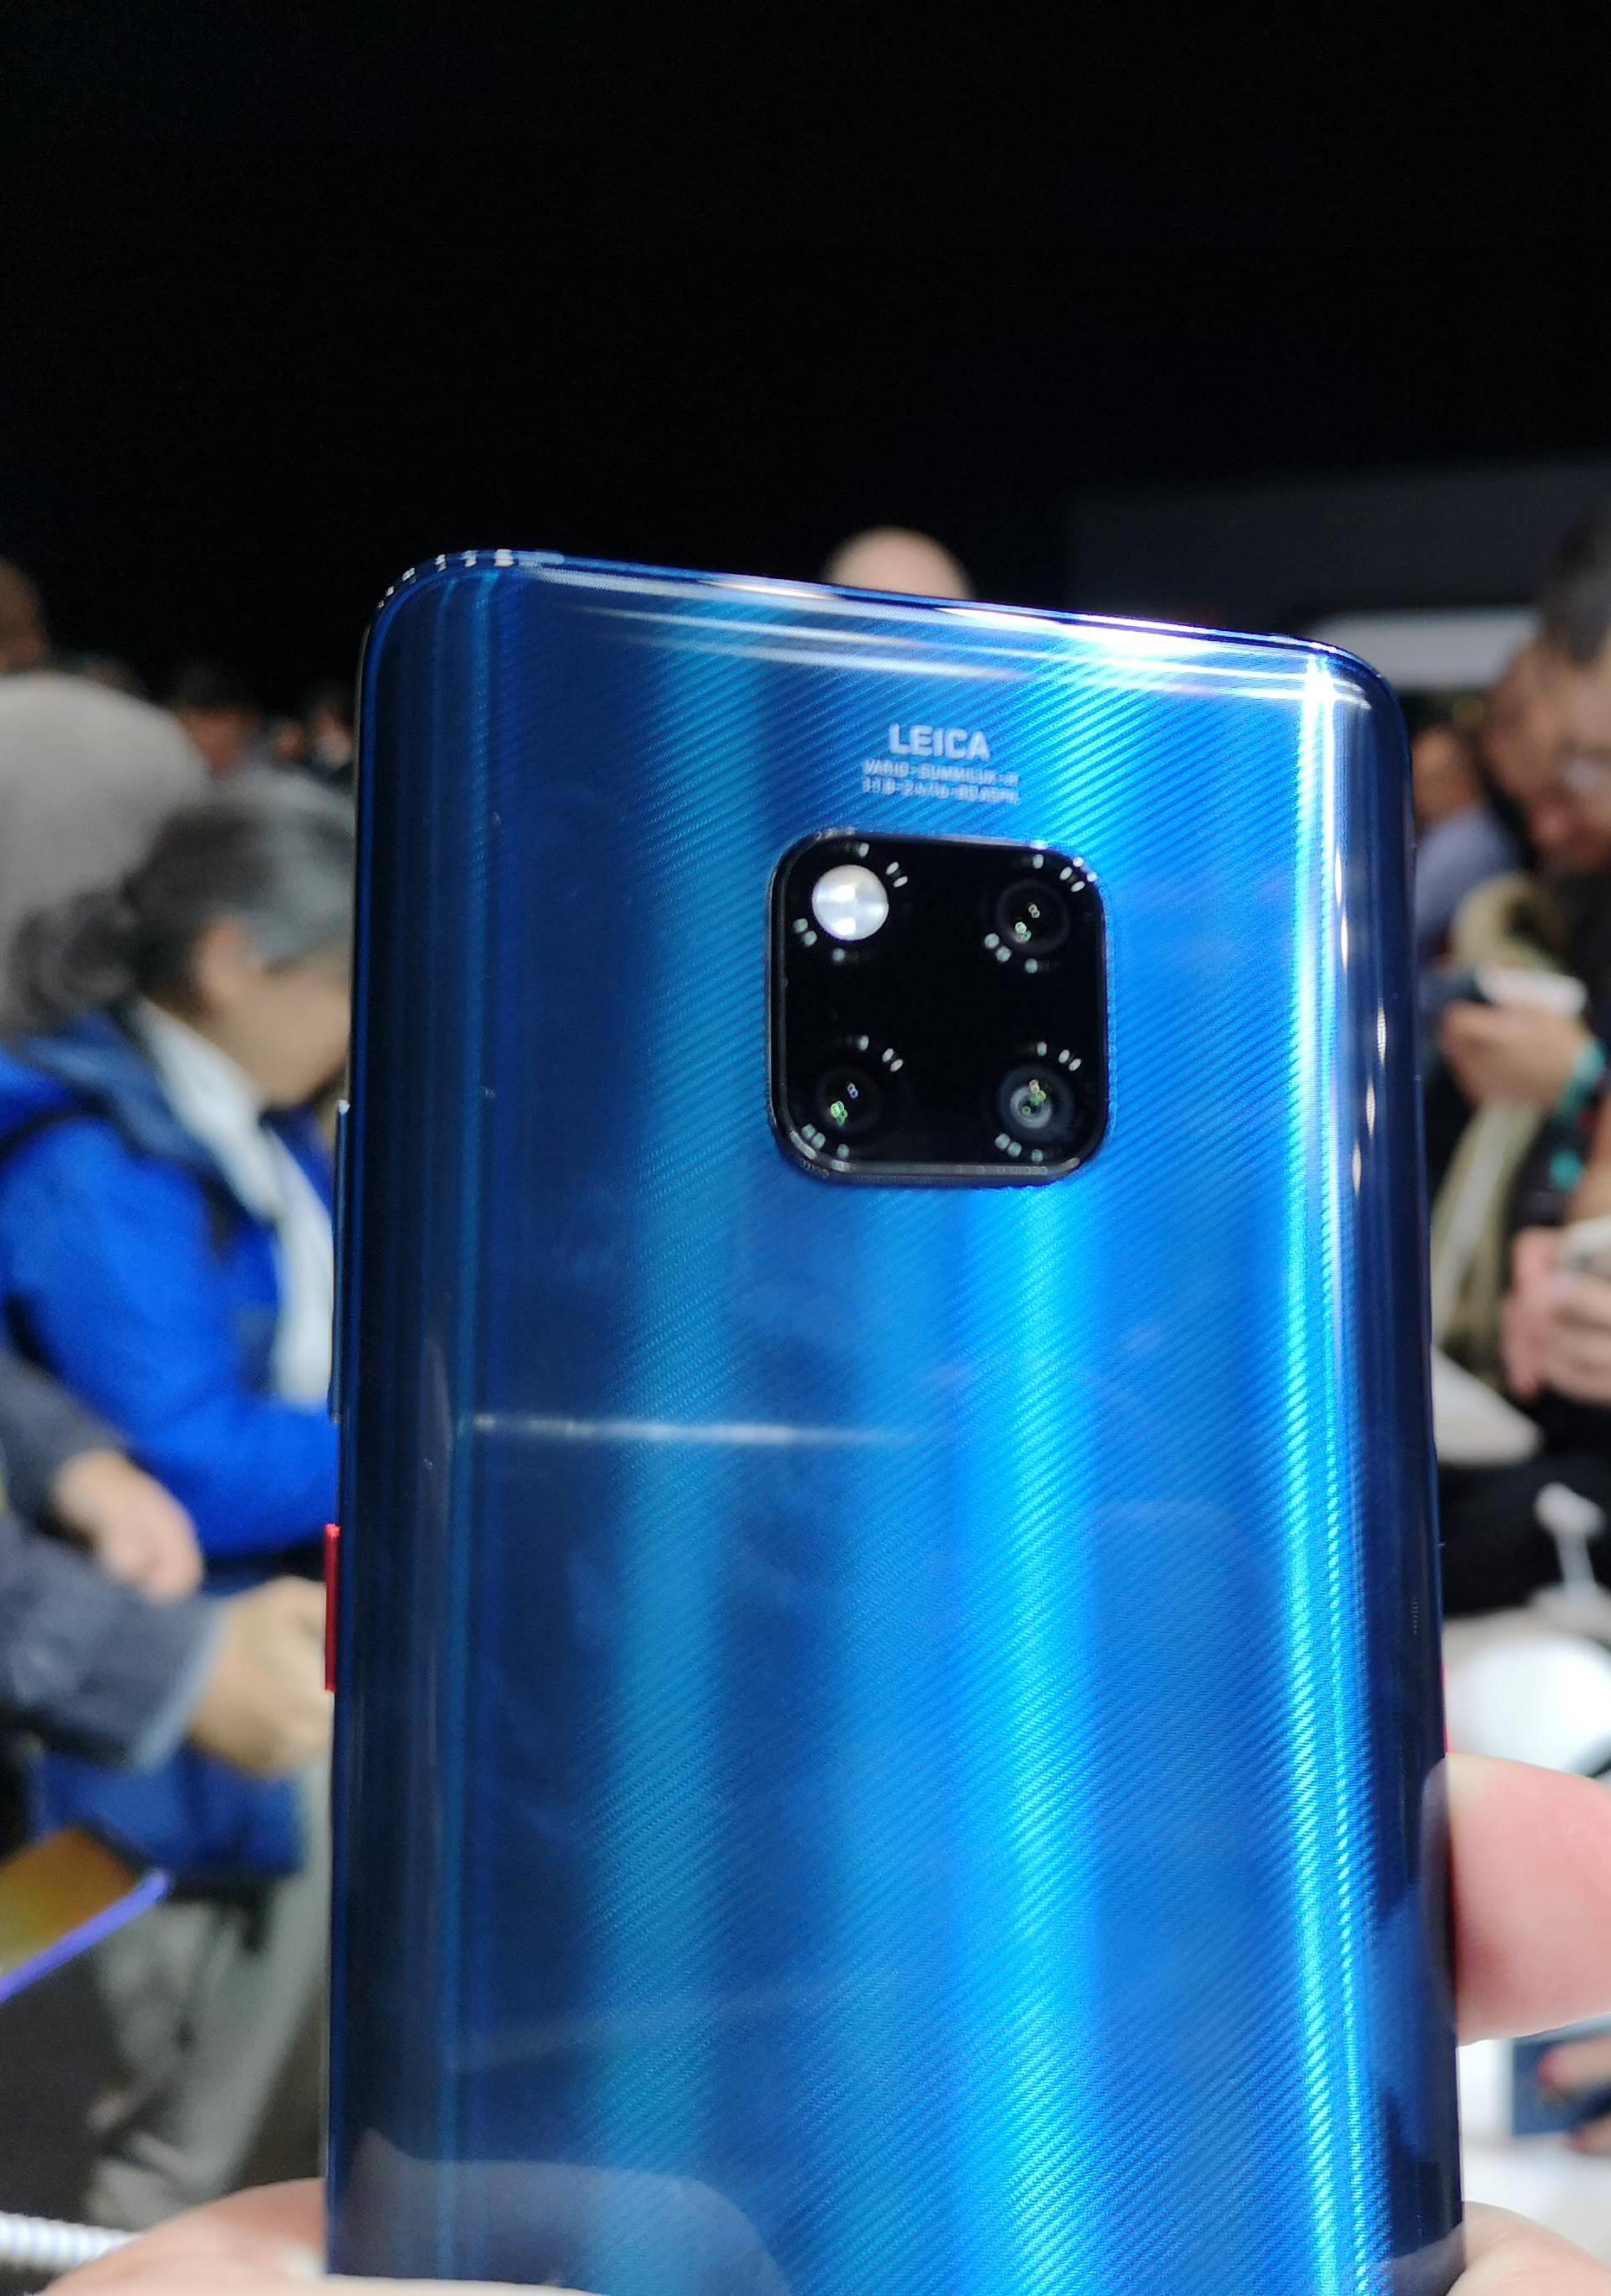 Mate 20 Pro bit će Huaweijev najprodavaniji telefon ikada?